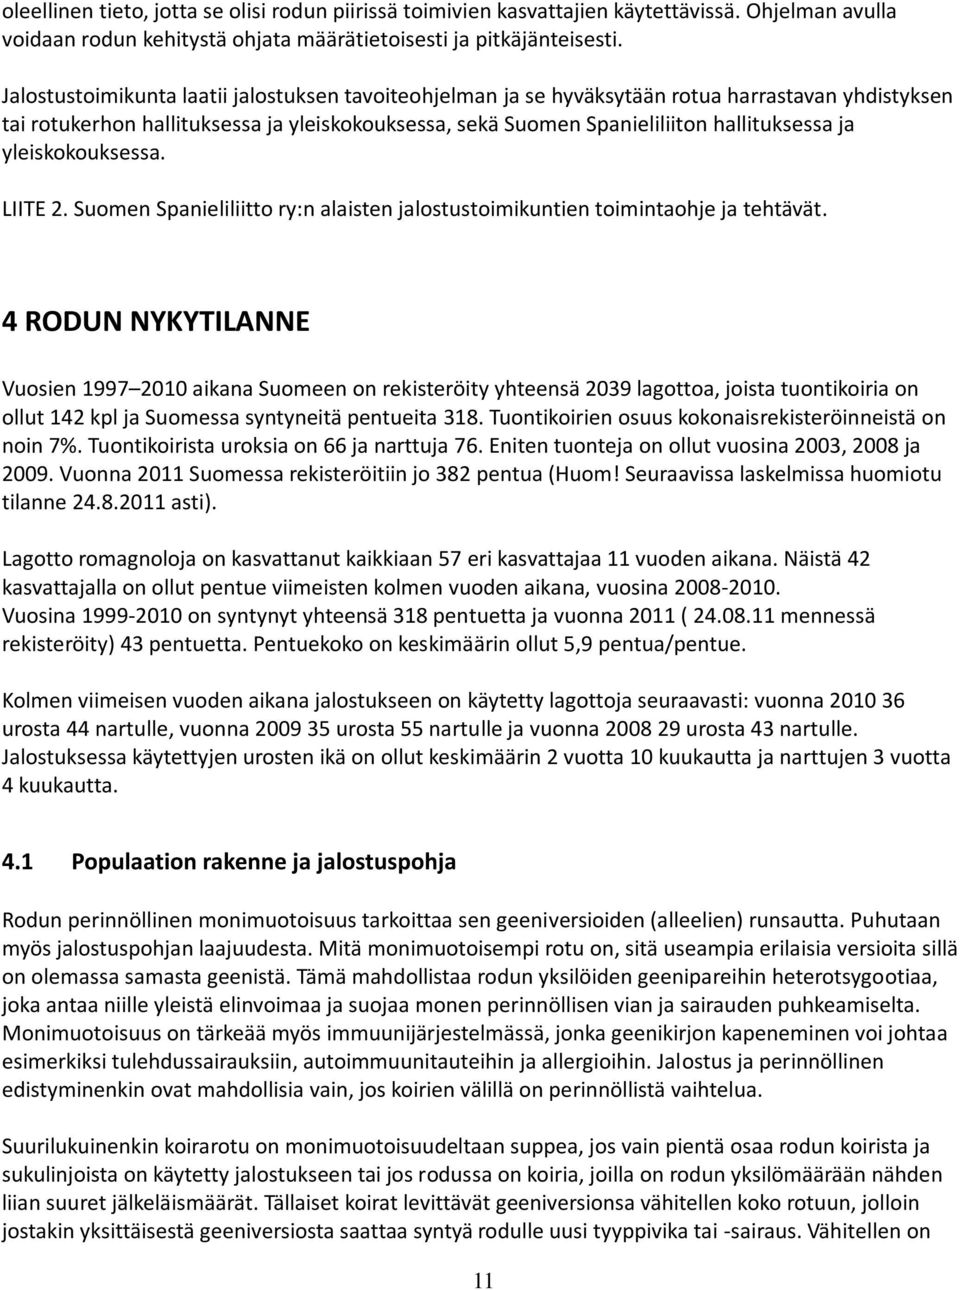 yleiskokouksessa. LIITE 2. Suomen Spanieliliitto ry:n alaisten jalostustoimikuntien toimintaohje ja tehtävät.